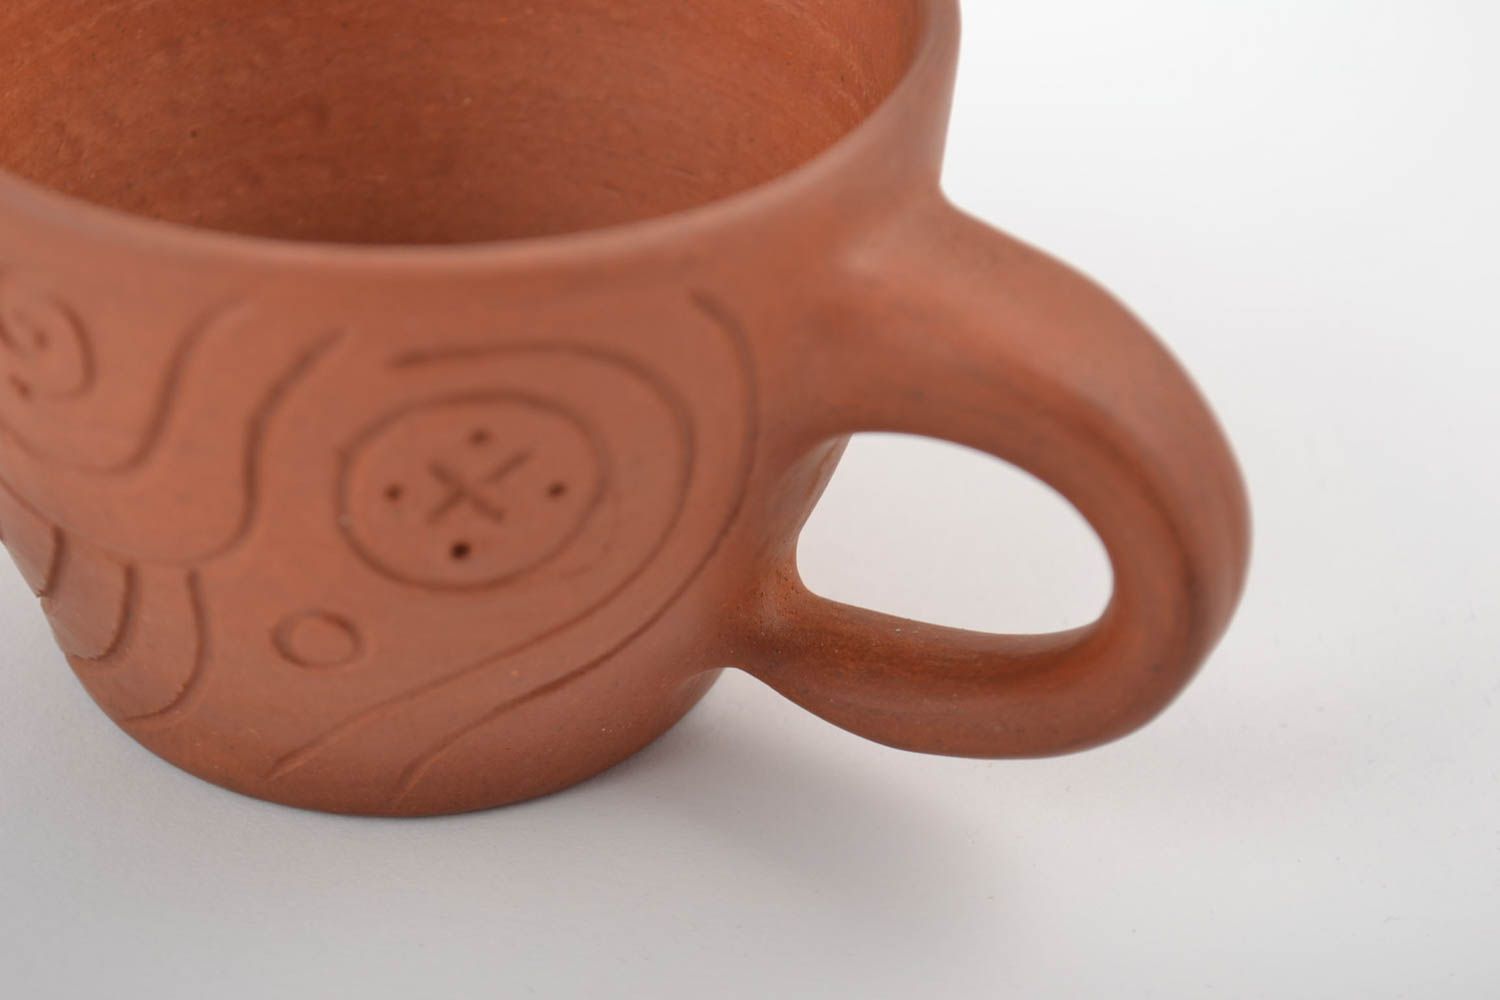 Juego de vajilla tazas originales decoradas de cerámica hechas a mano 3 piezas foto 5